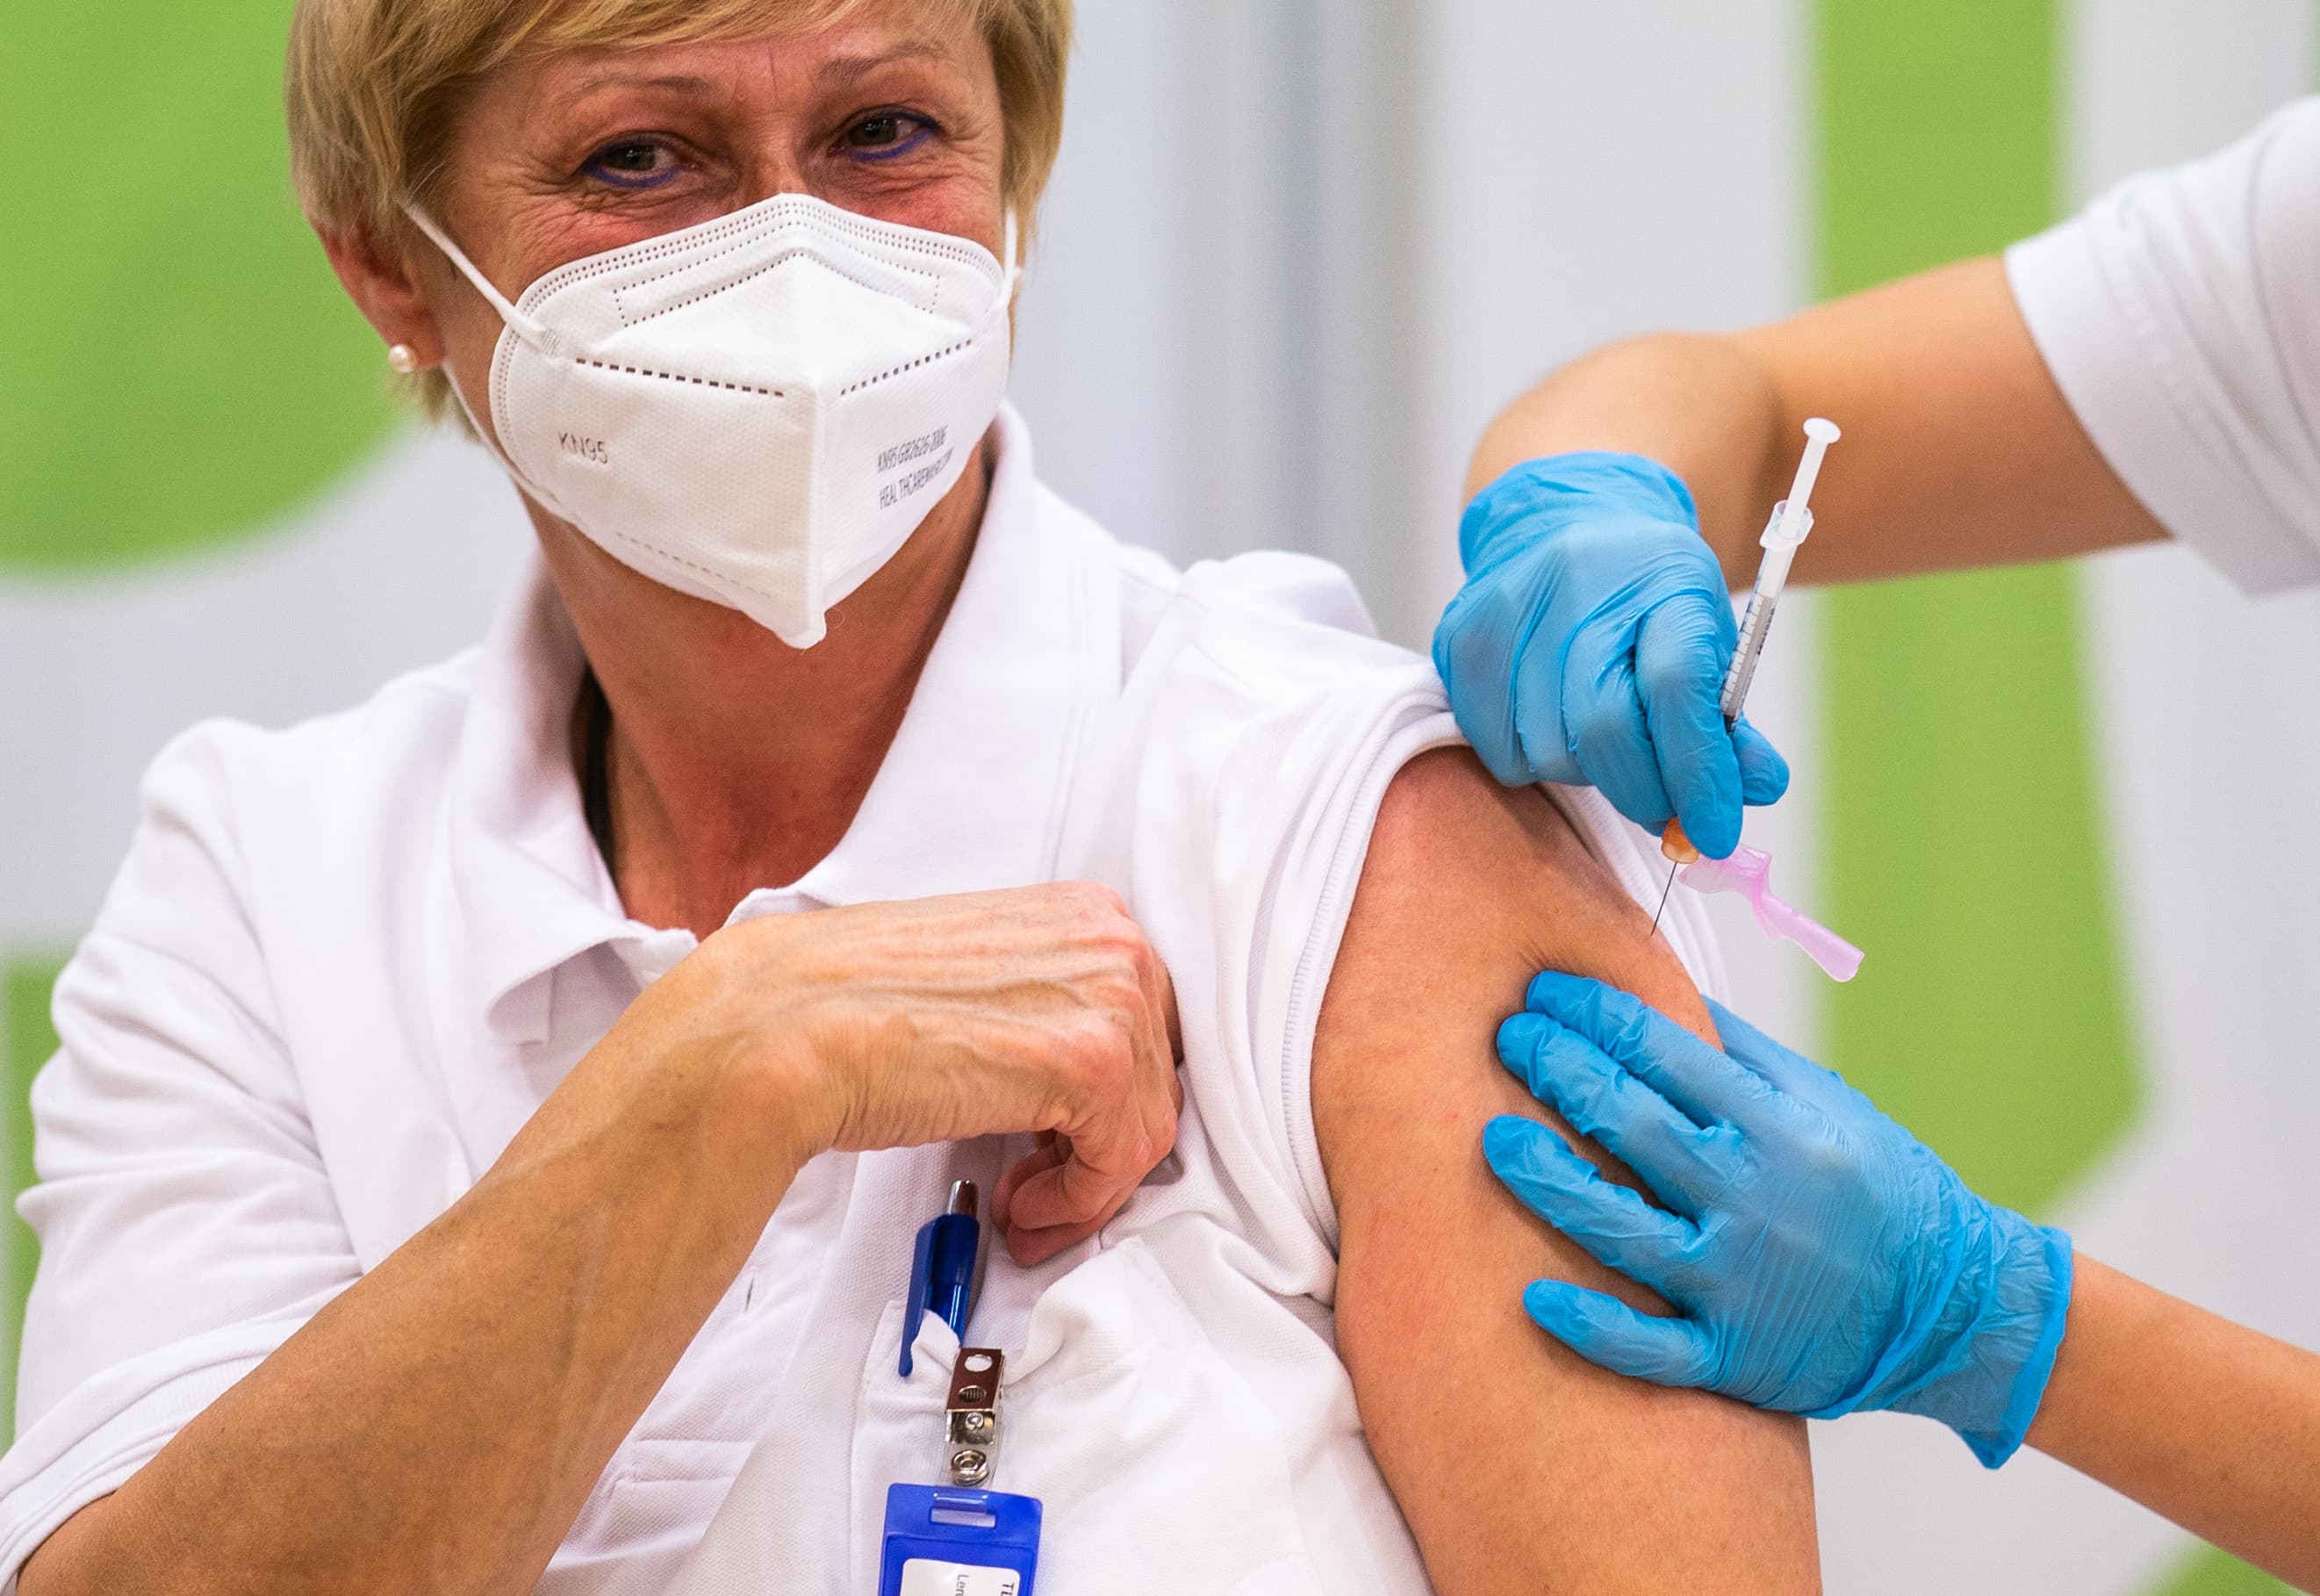 EU starts Covid-19 vaccine campaign